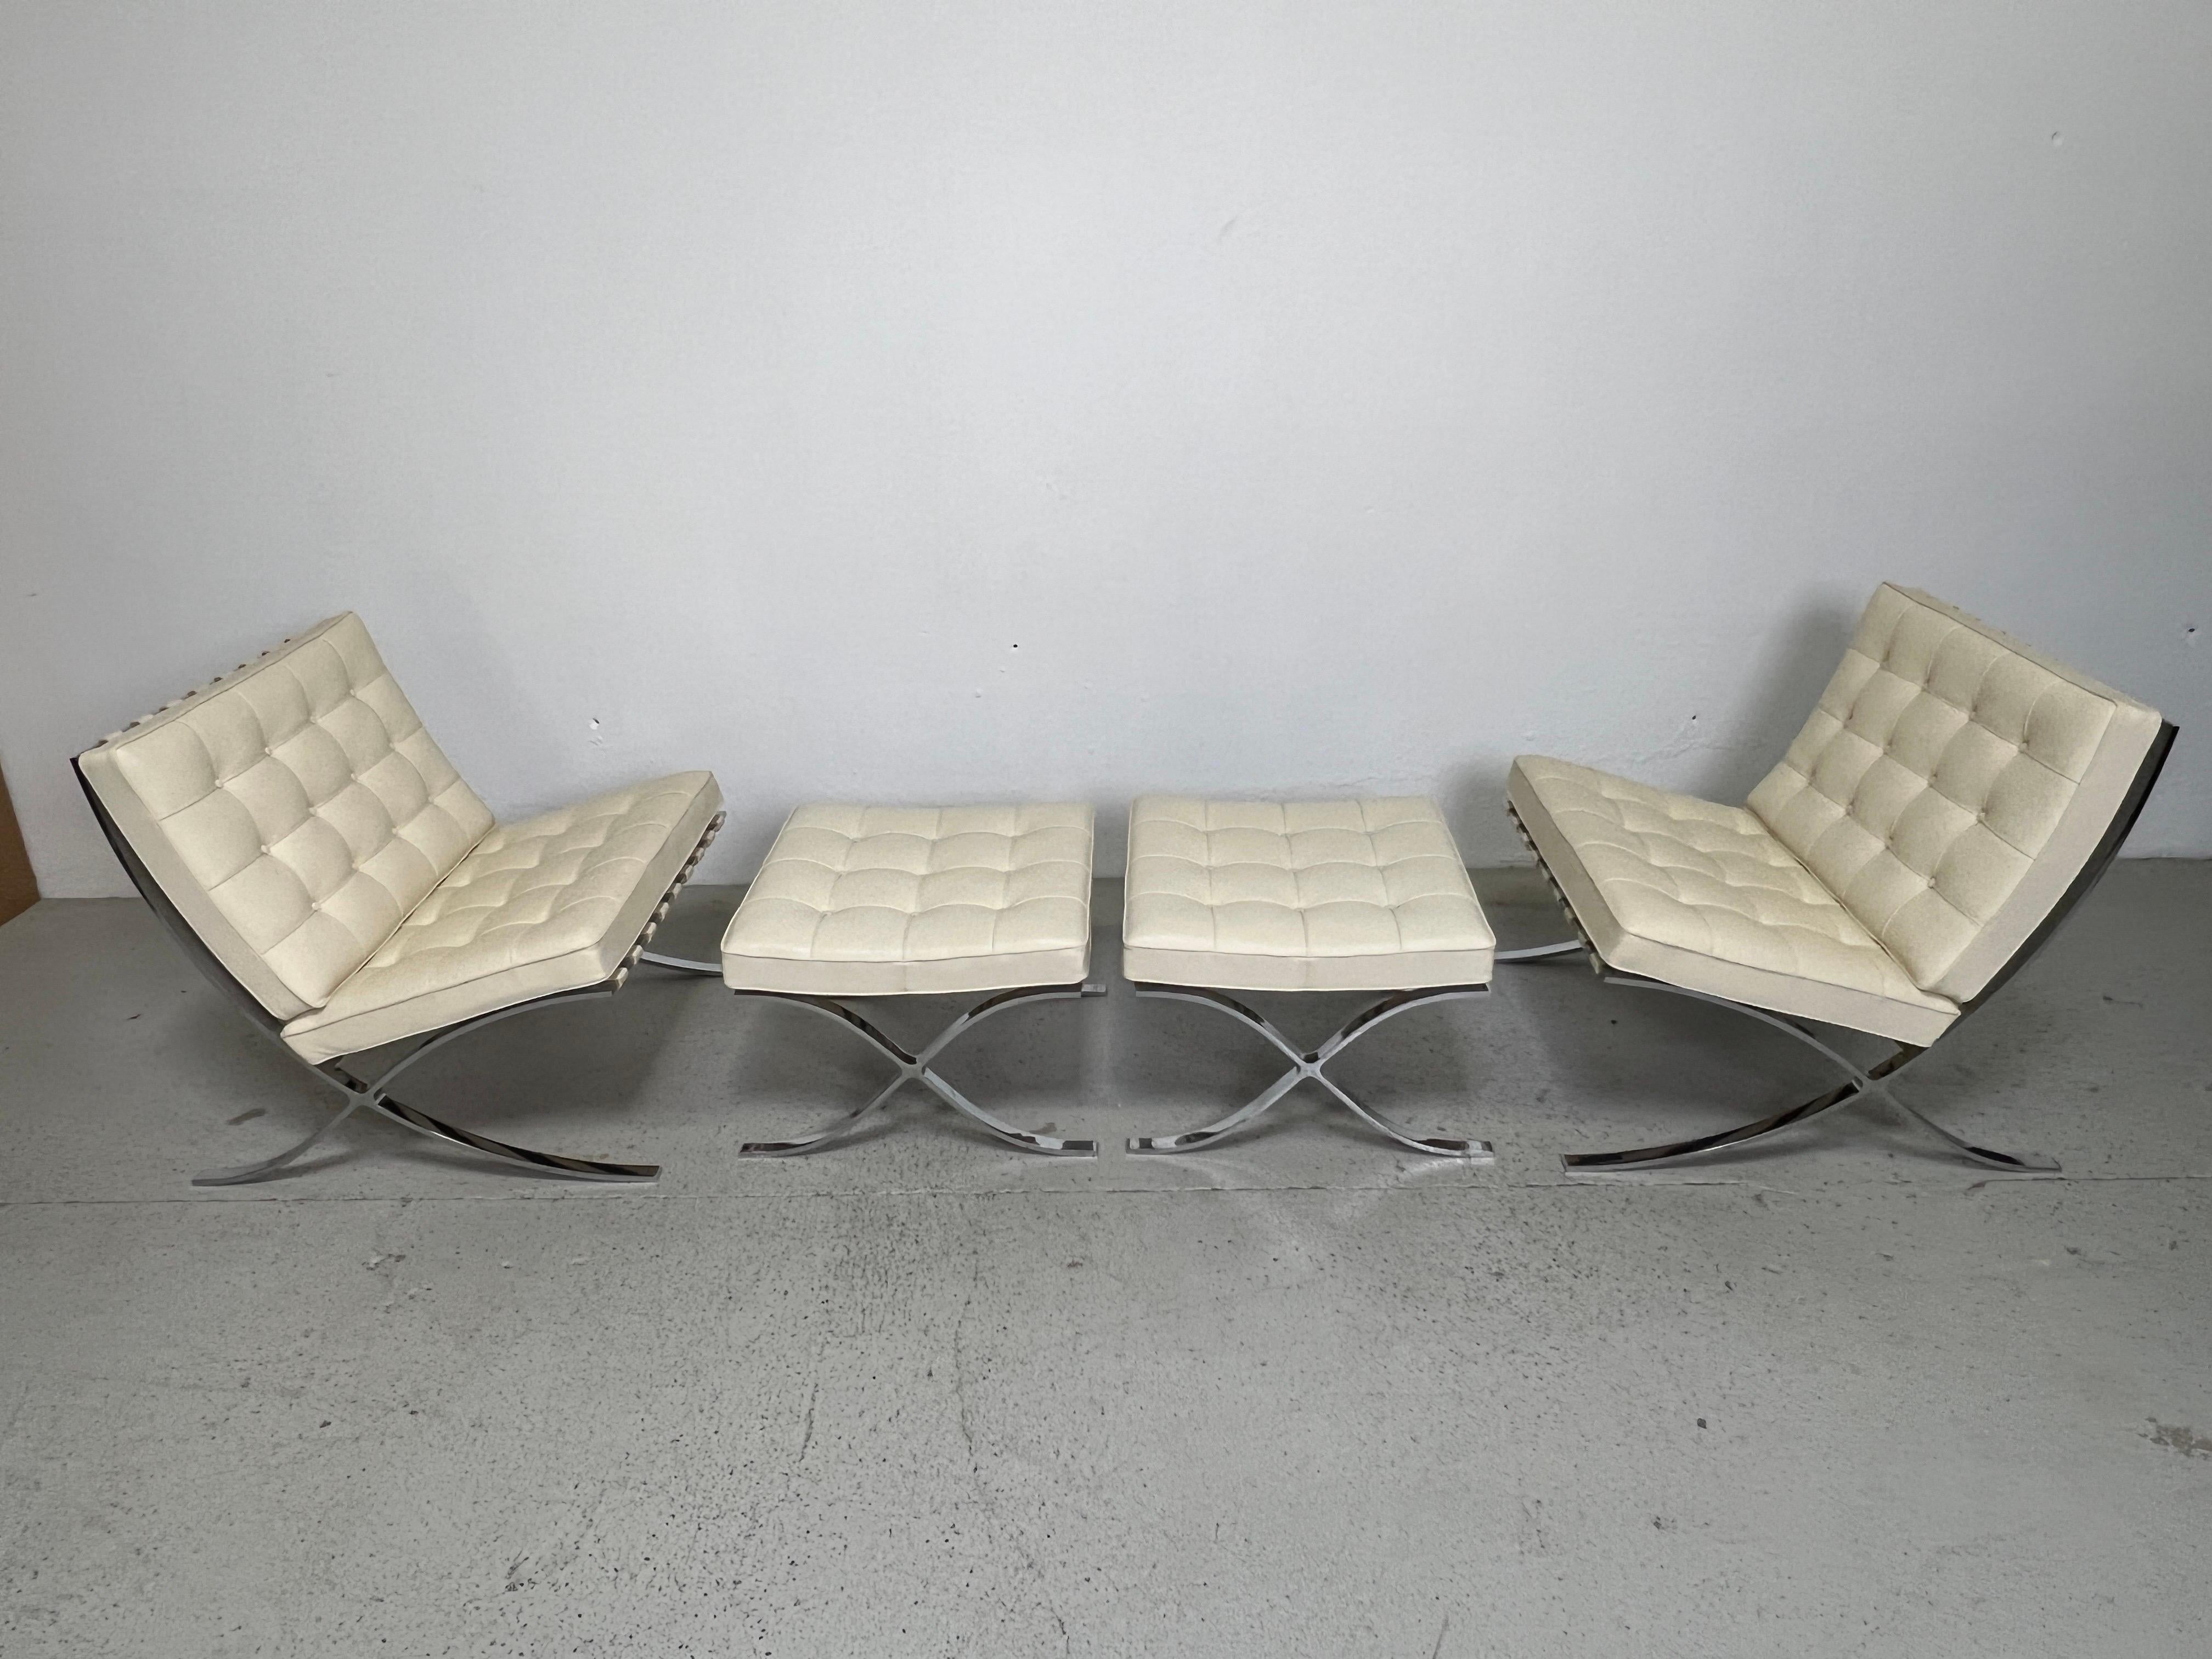 Ein passendes Paar Barcelona-Stühle und -Hocker, entworfen von Mies van der Rohe für Knoll. Dieses Set aus den 2000er Jahren mit einem butterweichen cremefarbenen Leder. 